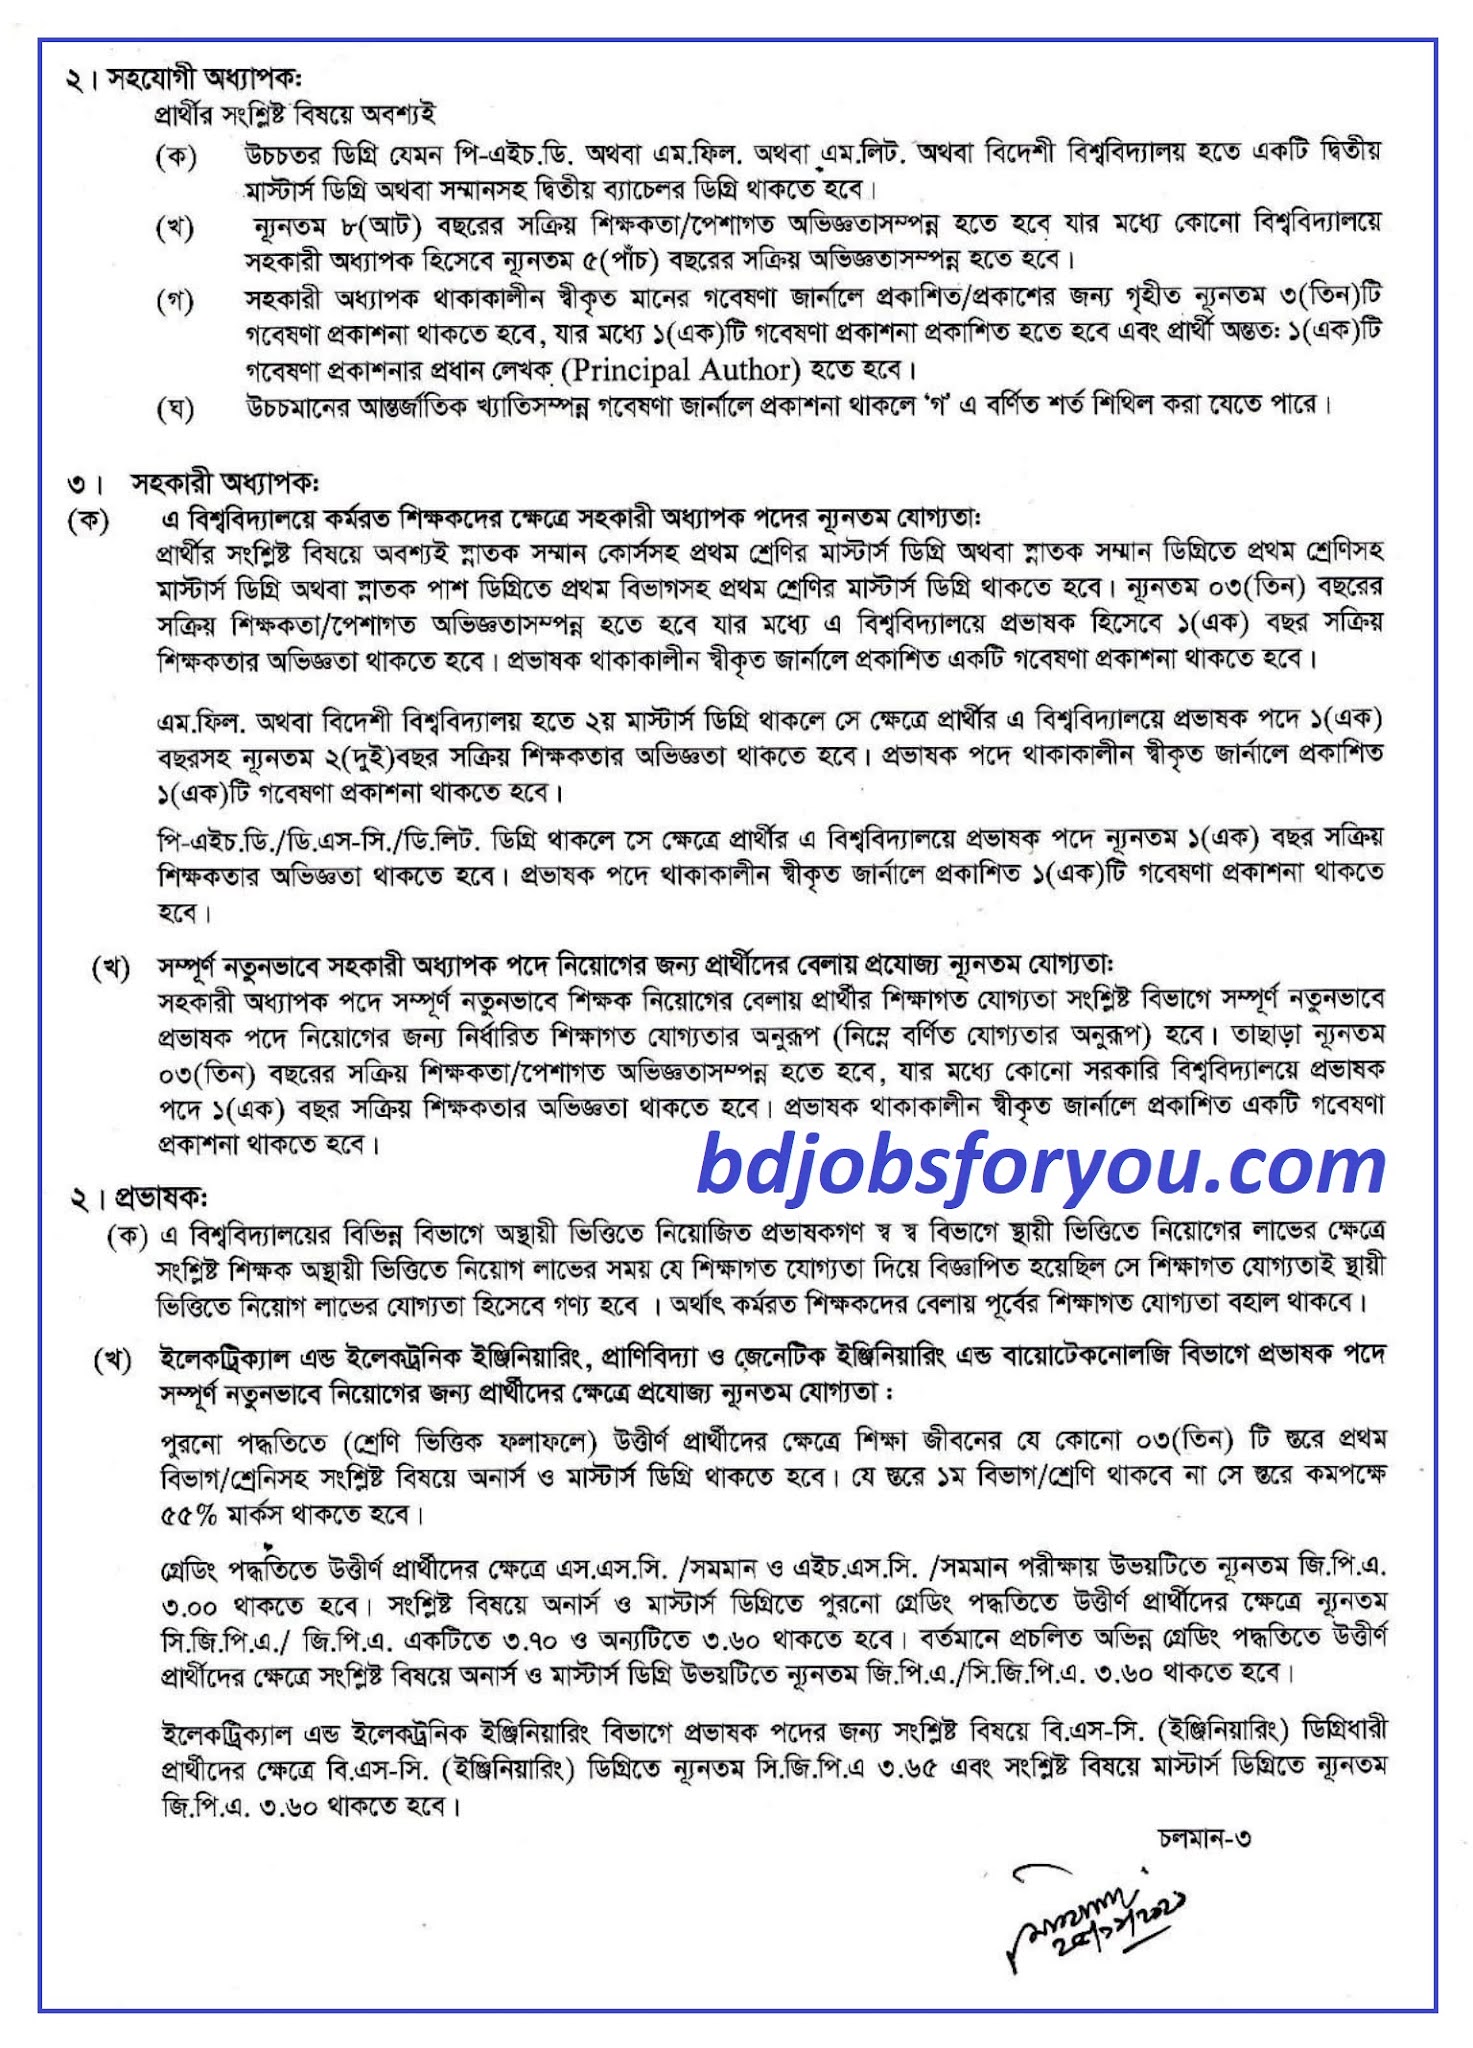 চট্টগ্রাম বিশ্ববিদ্যালয় শিক্ষক নিয়োগ বিজ্ঞপ্তি ২০২১, Chittagong University job circular 2021